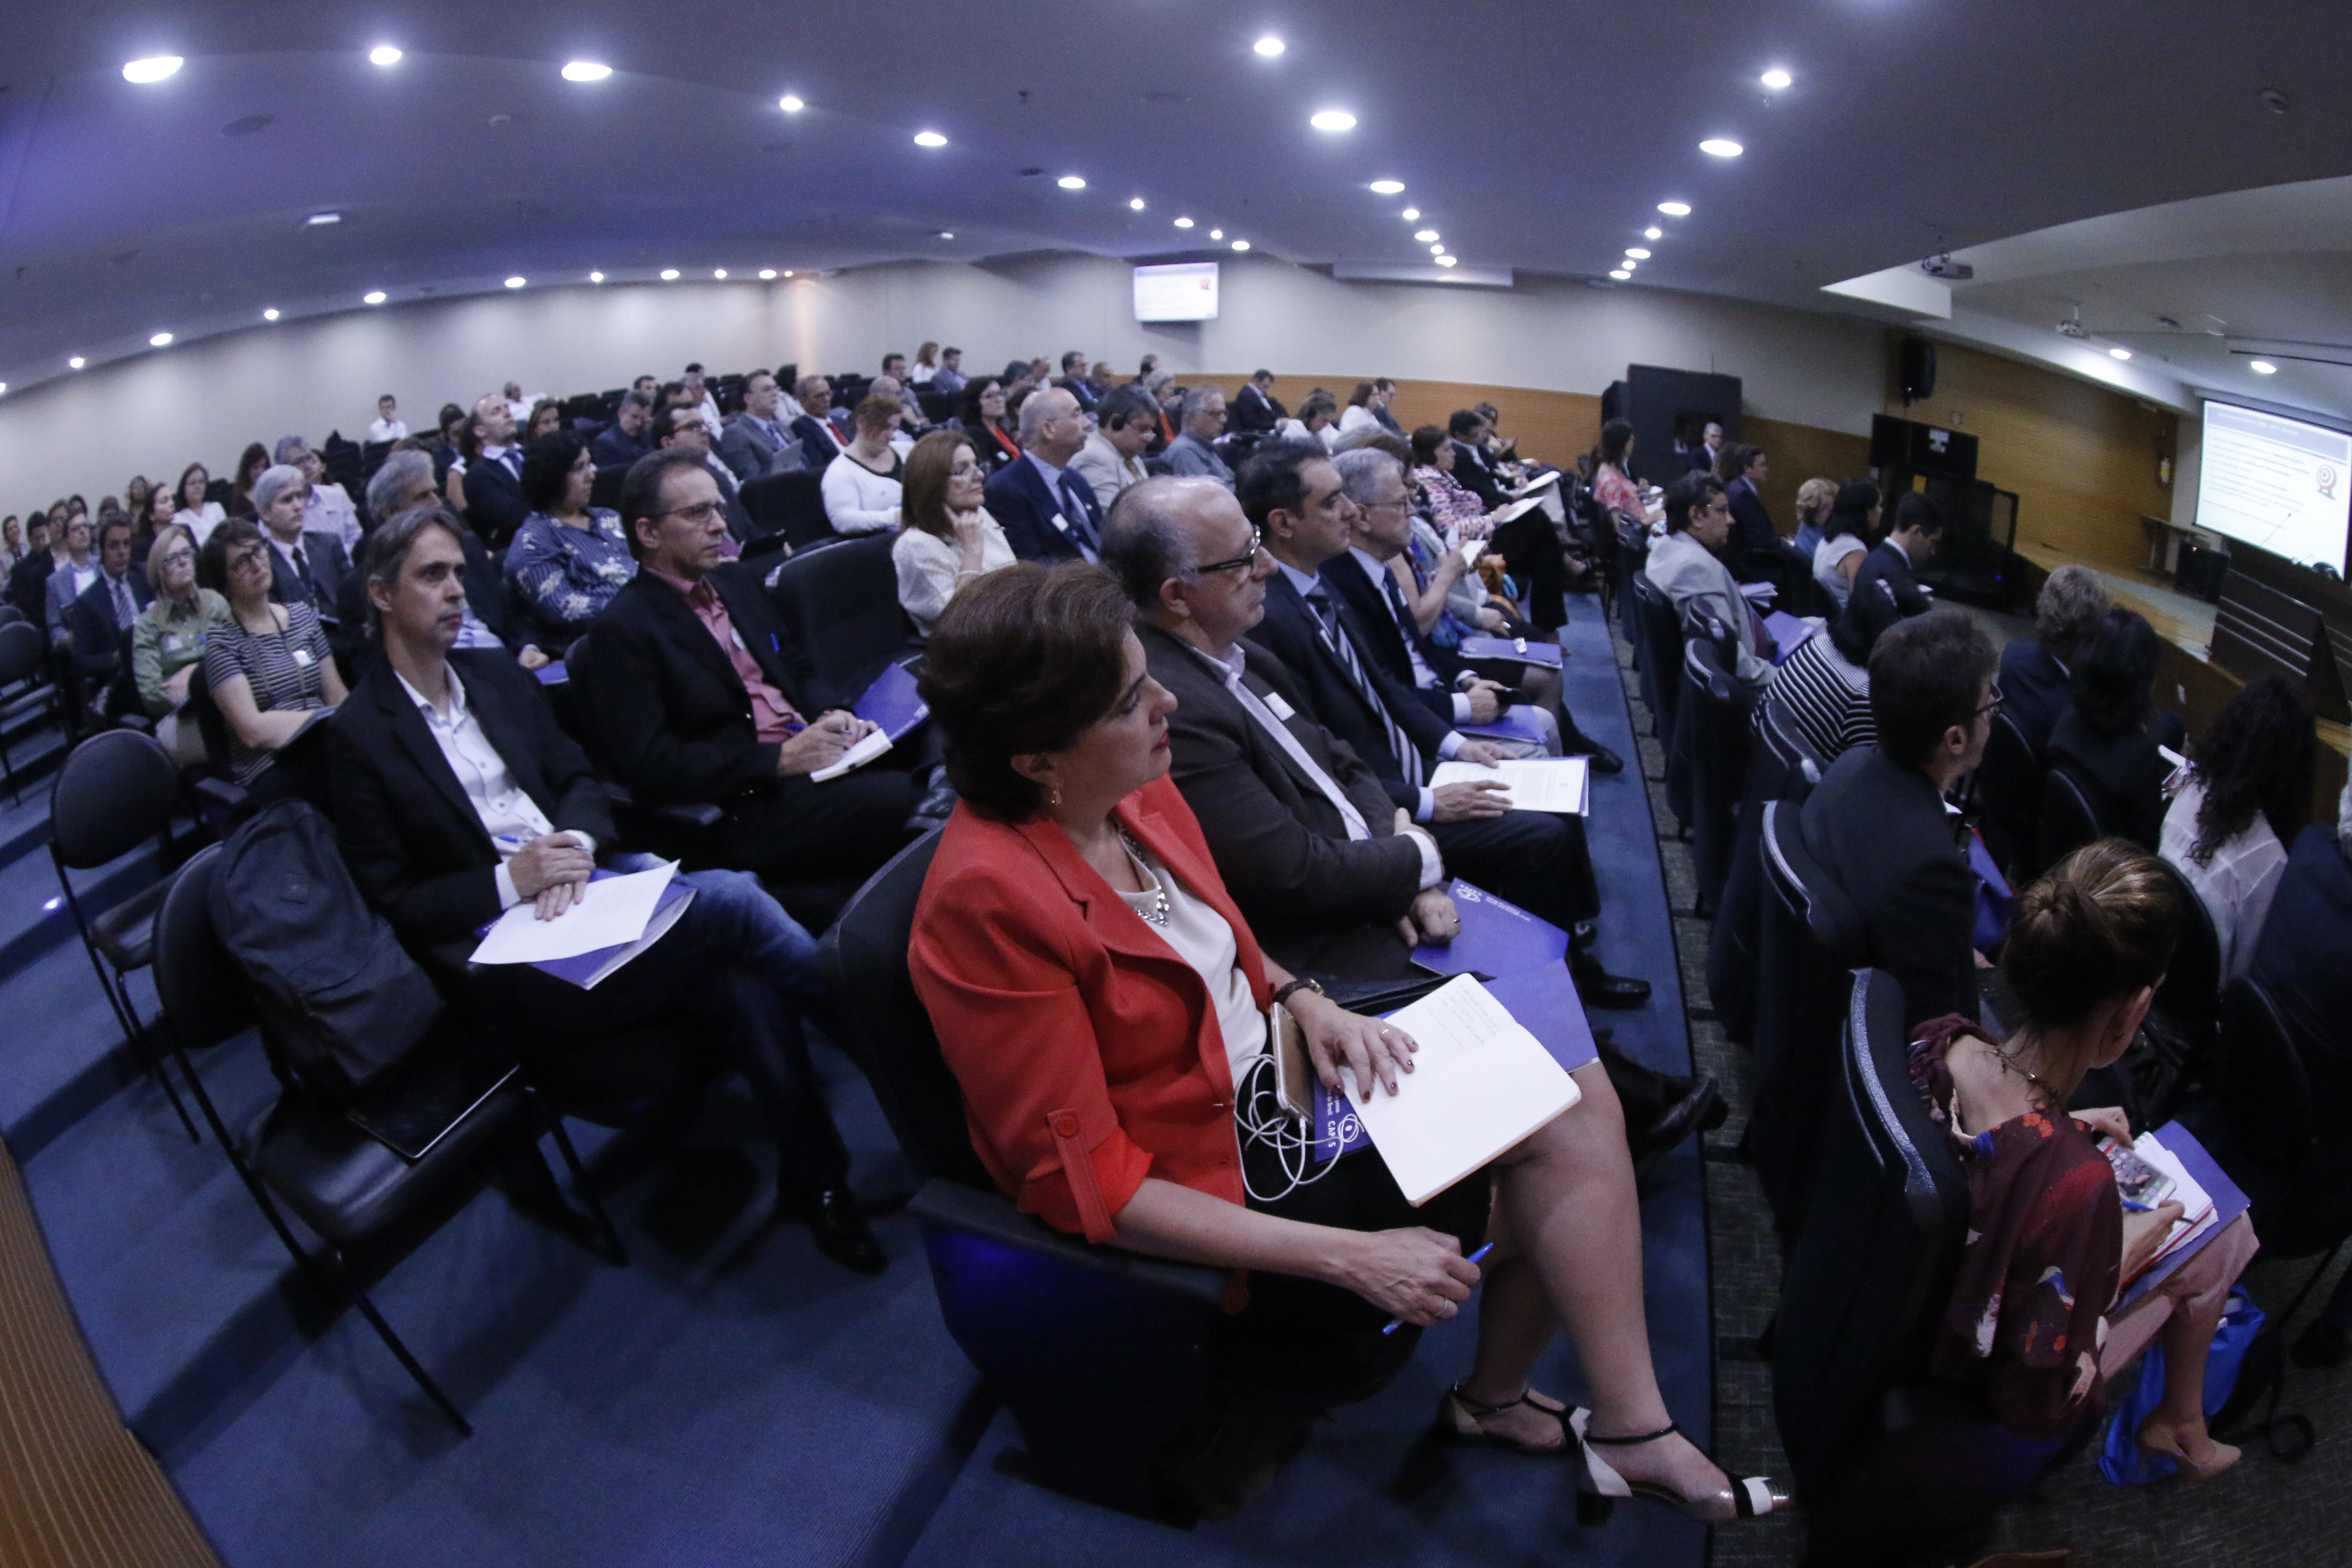 Cerca de 90 representantes de universidades brasileiras formaram o público do evento